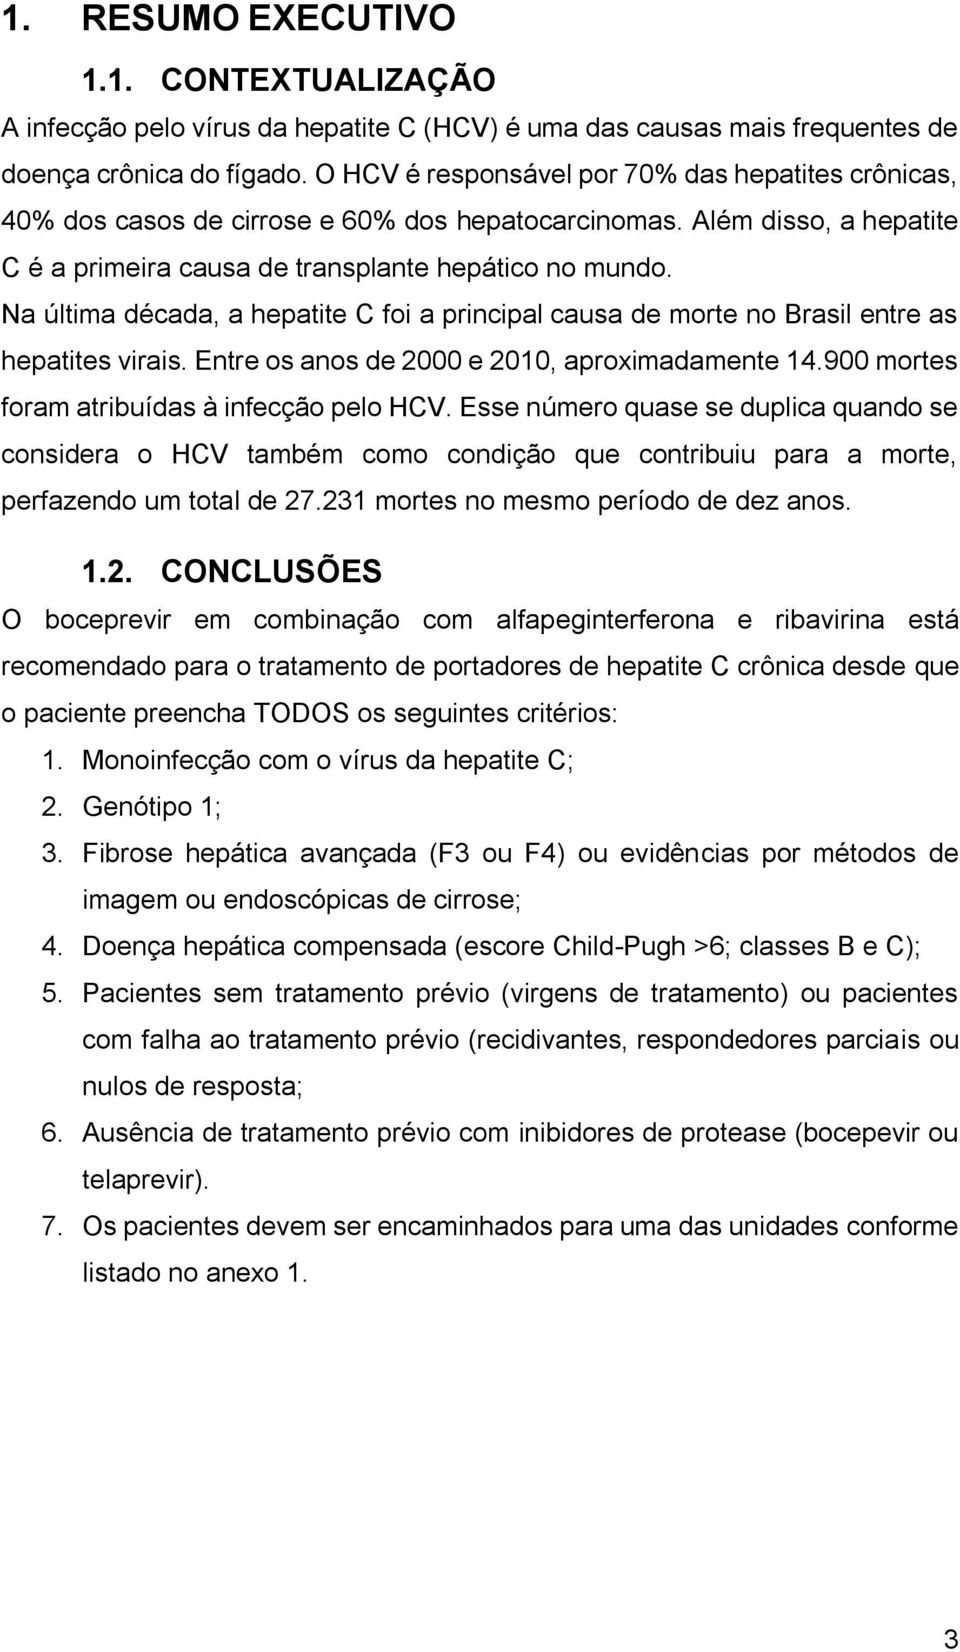 Na última década, a hepatite C foi a principal causa de morte no Brasil entre as hepatites virais. Entre os anos de 2000 e 2010, aproximadamente 14.900 mortes foram atribuídas à infecção pelo HCV.